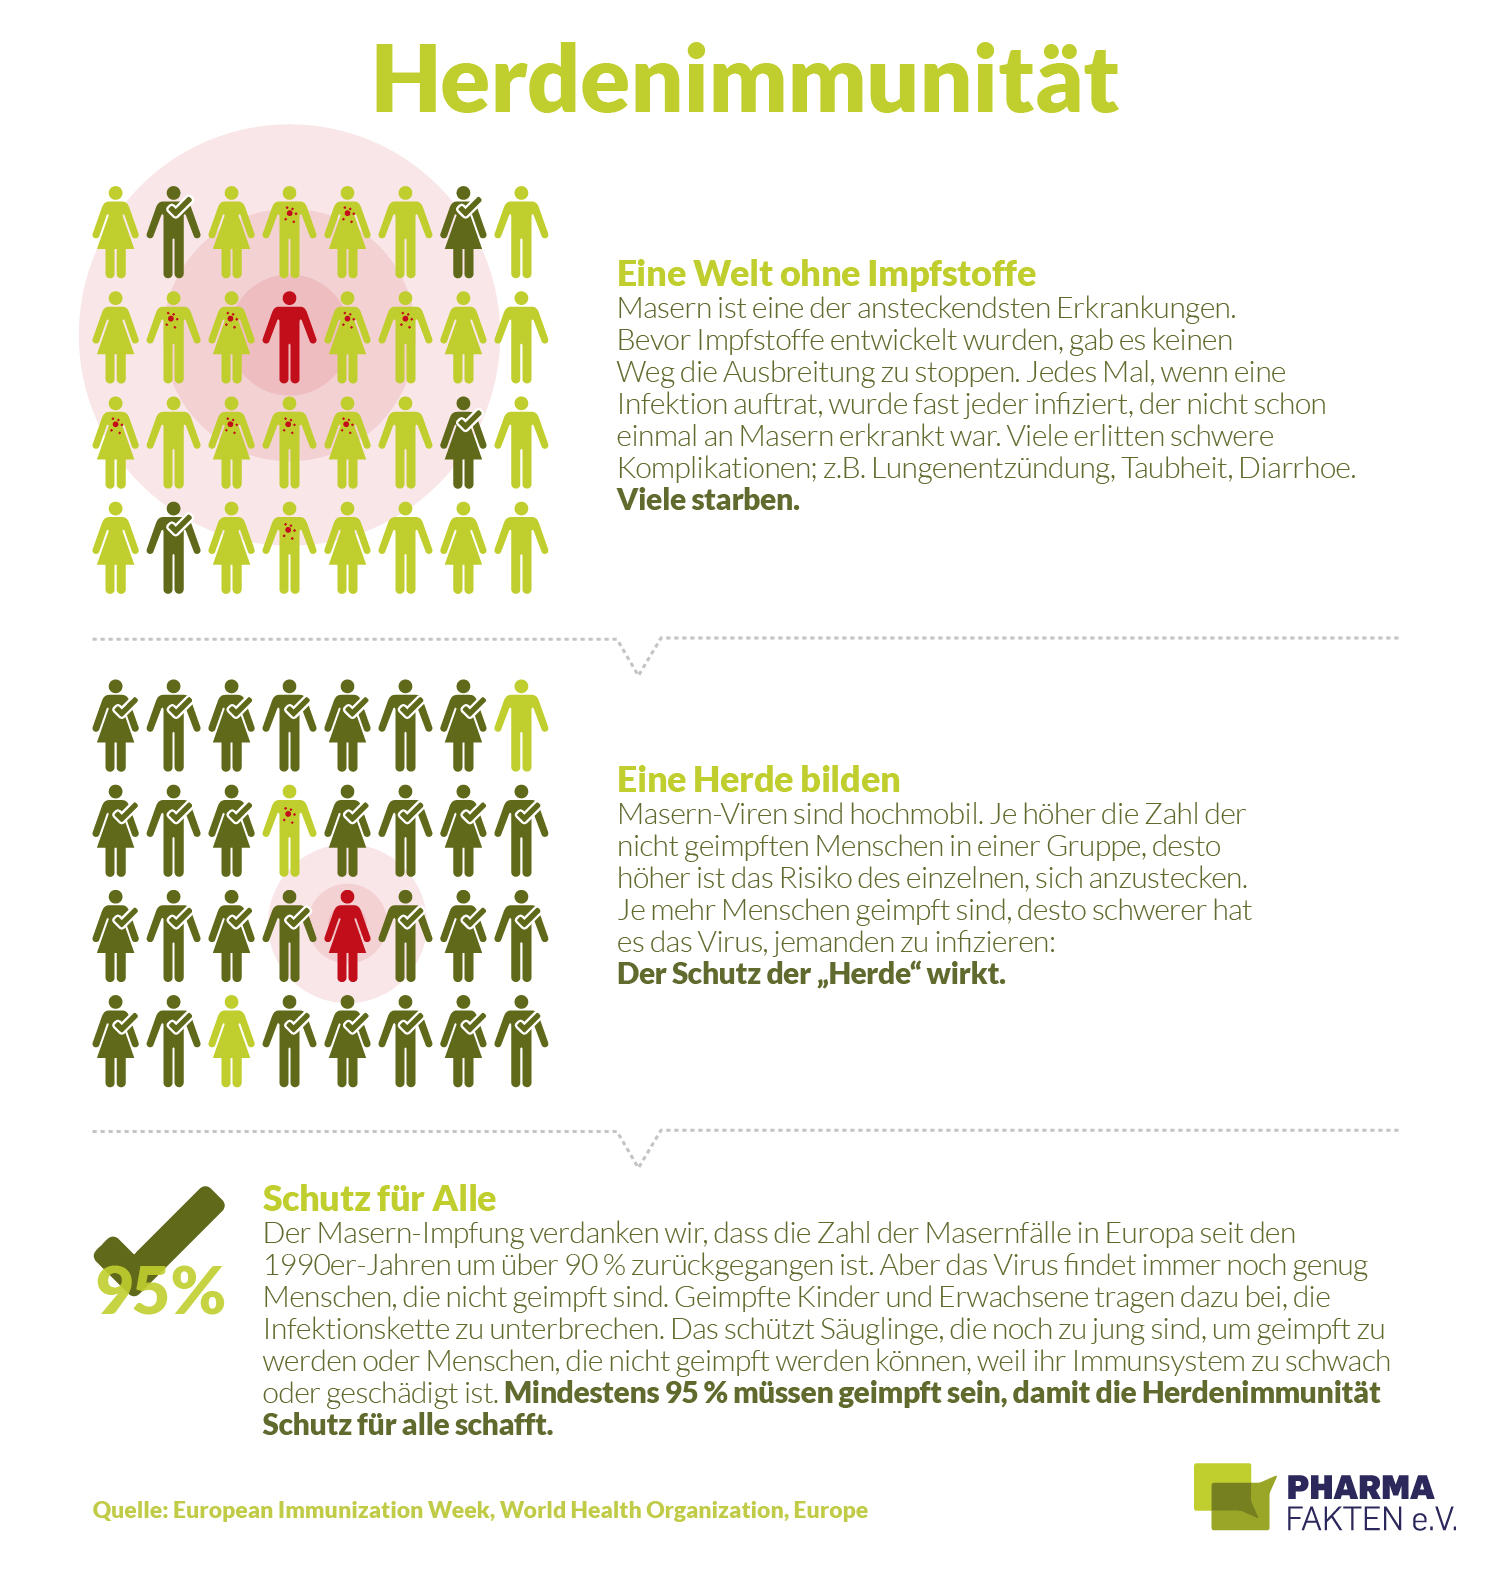 Herdenimmunität: wie sie funktioniert